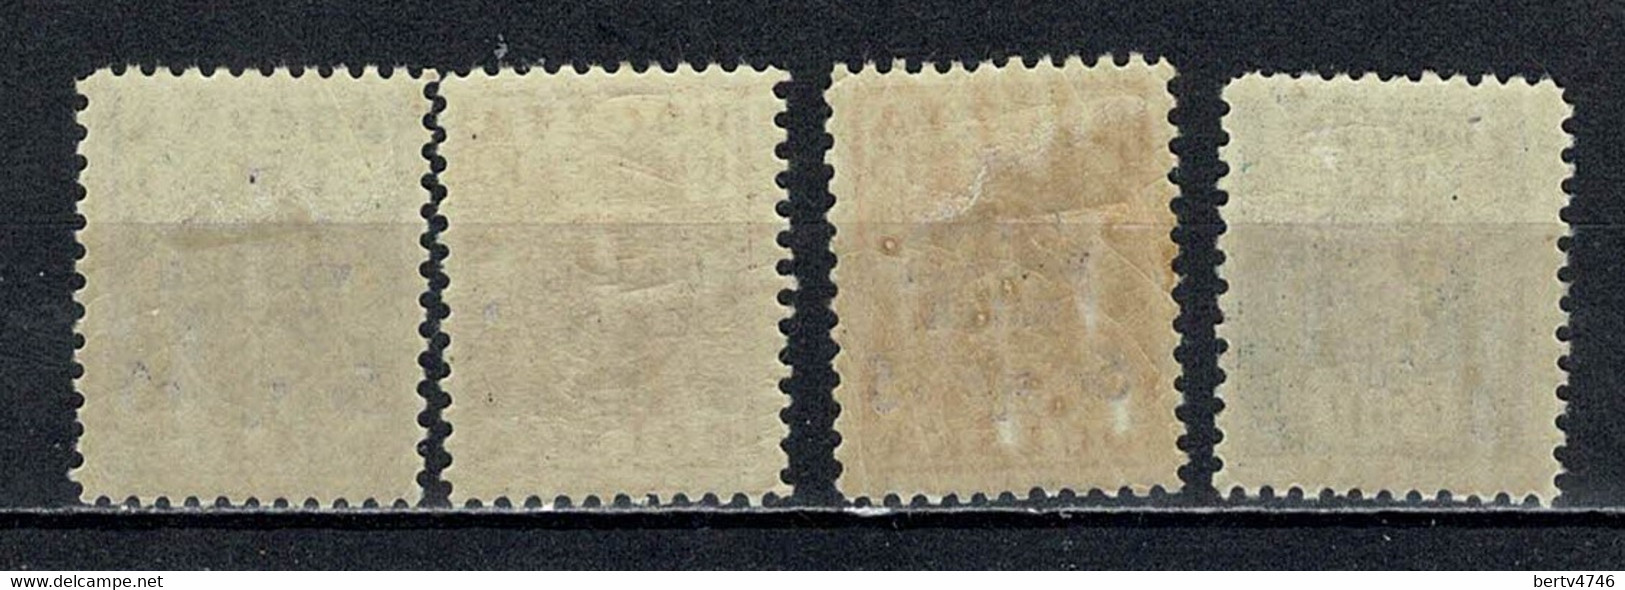 Polska 1919 Yv. 201/03*, 205*  Mi 118/20*, 122*,  MH - Unused Stamps